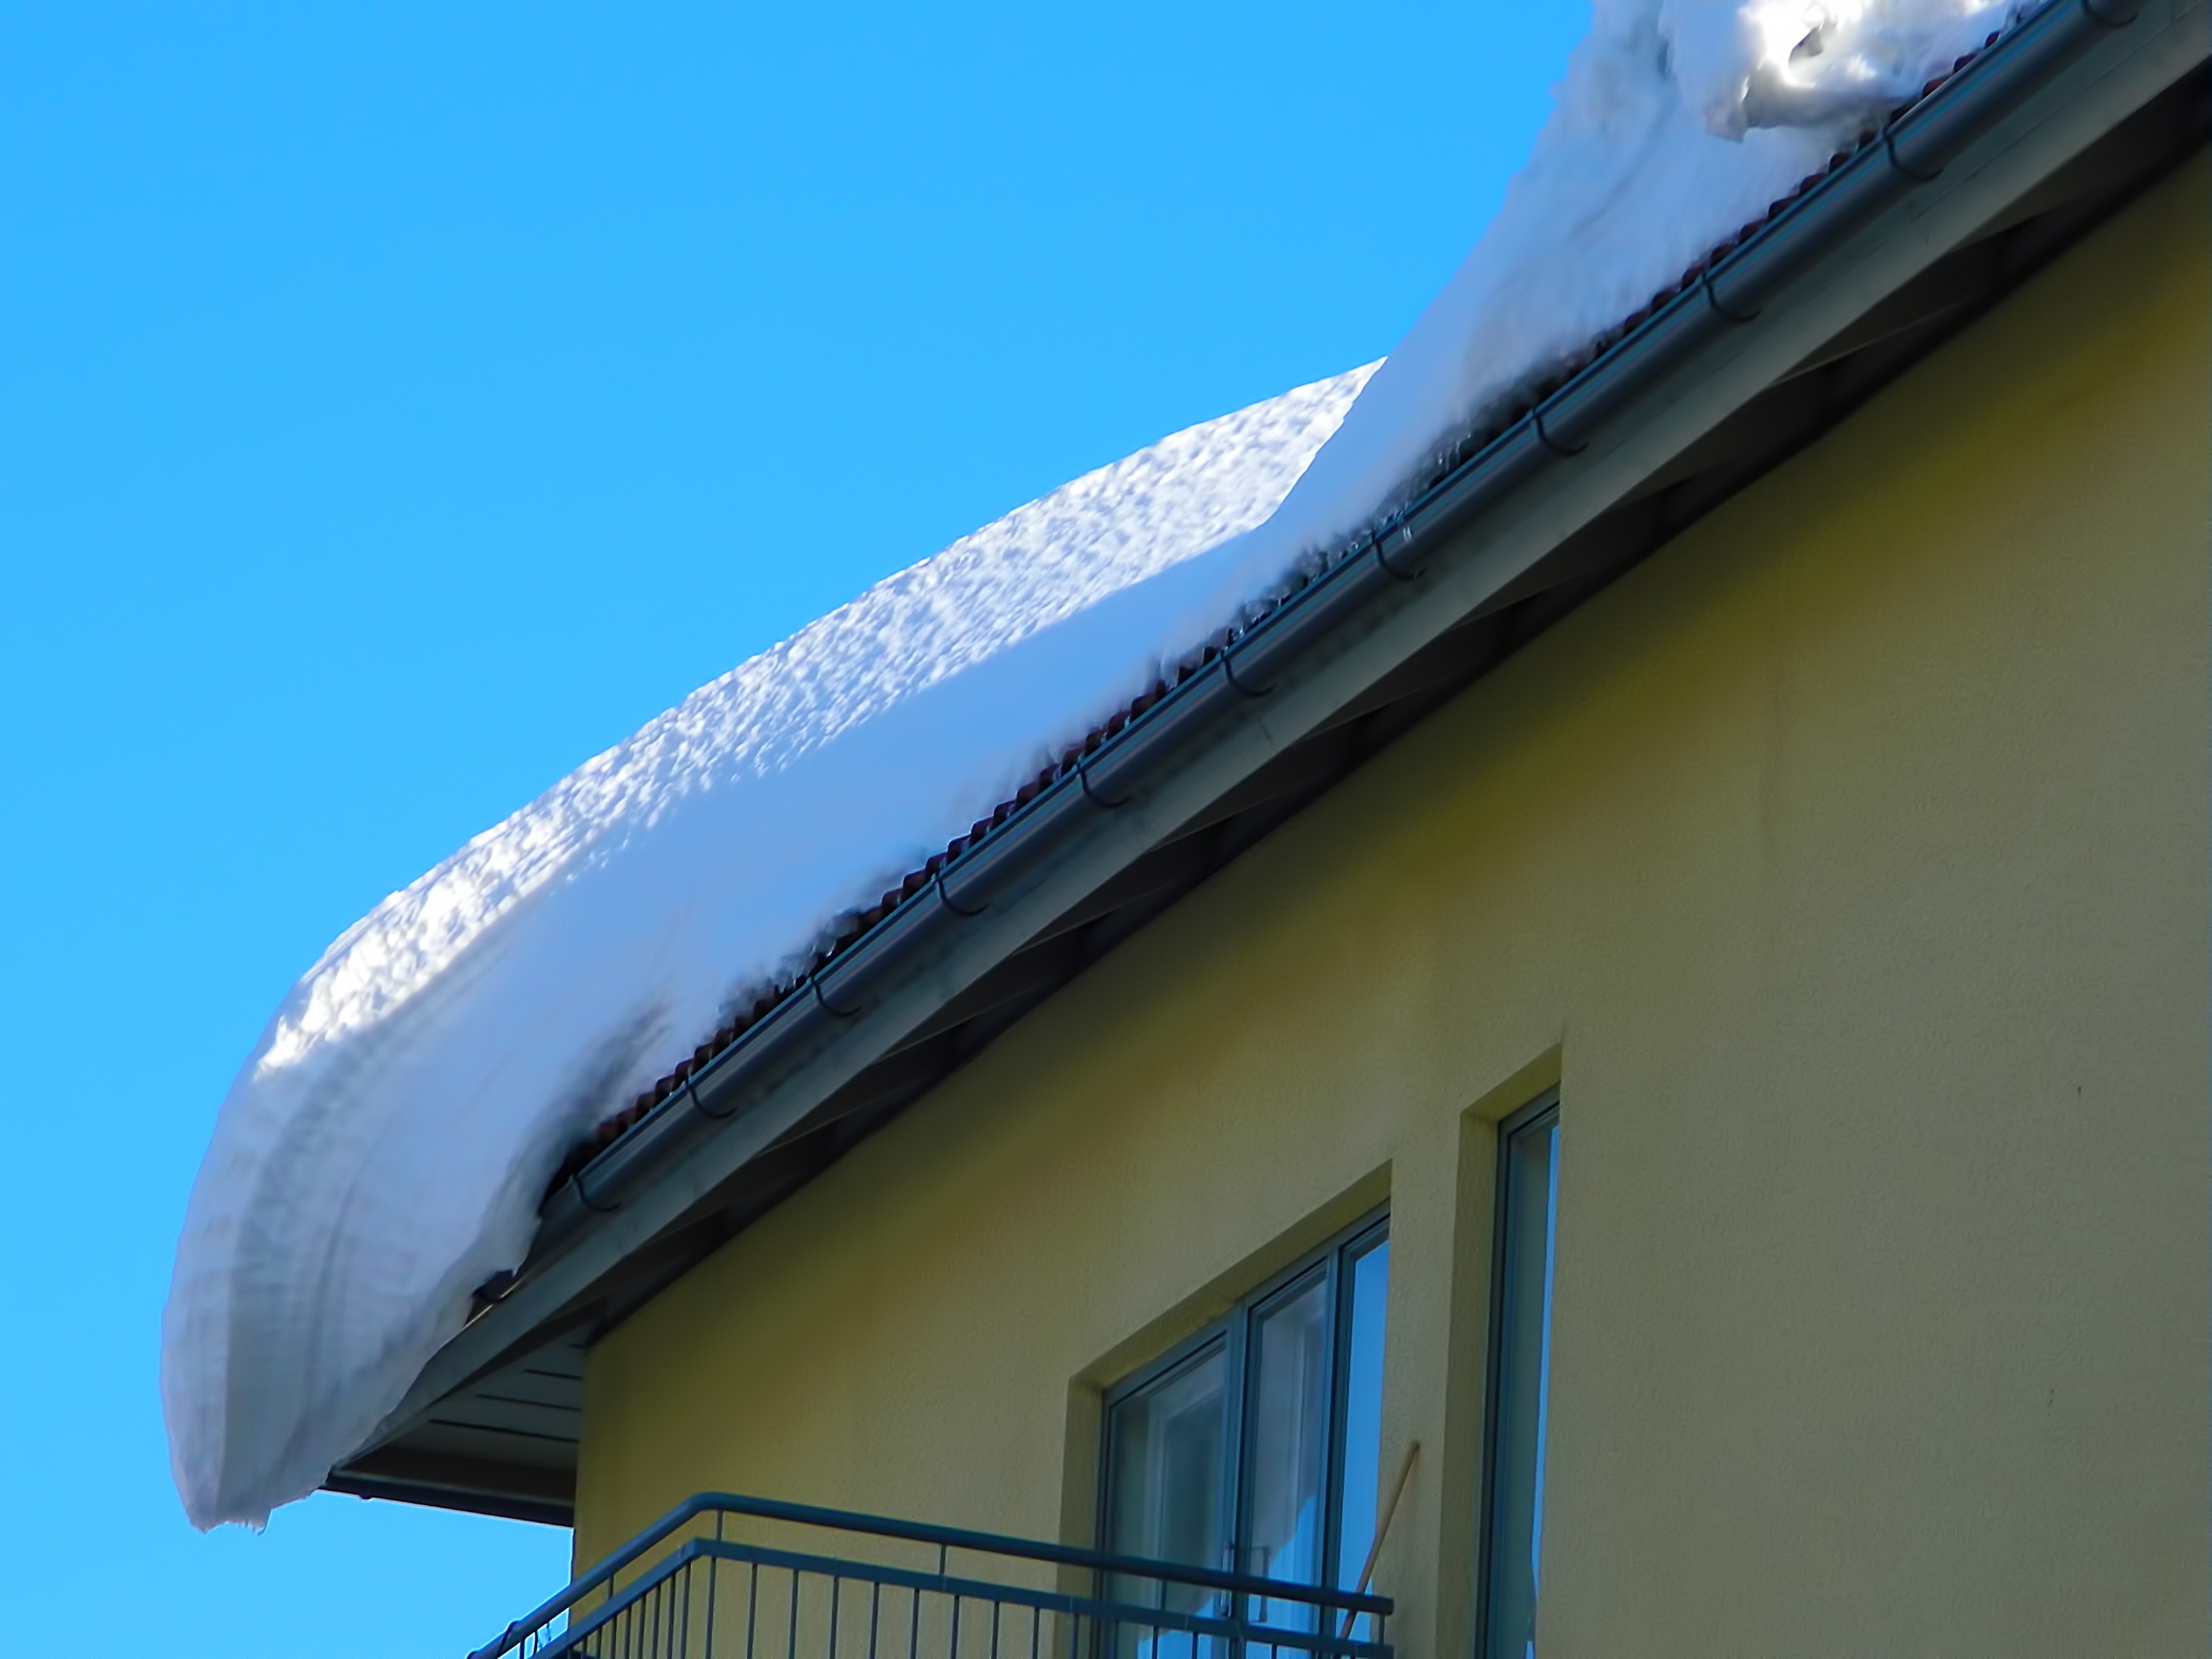 Komunikat do właścicieli i zarządców obiektów budowlanych w związku z trwającym okresem zimowym